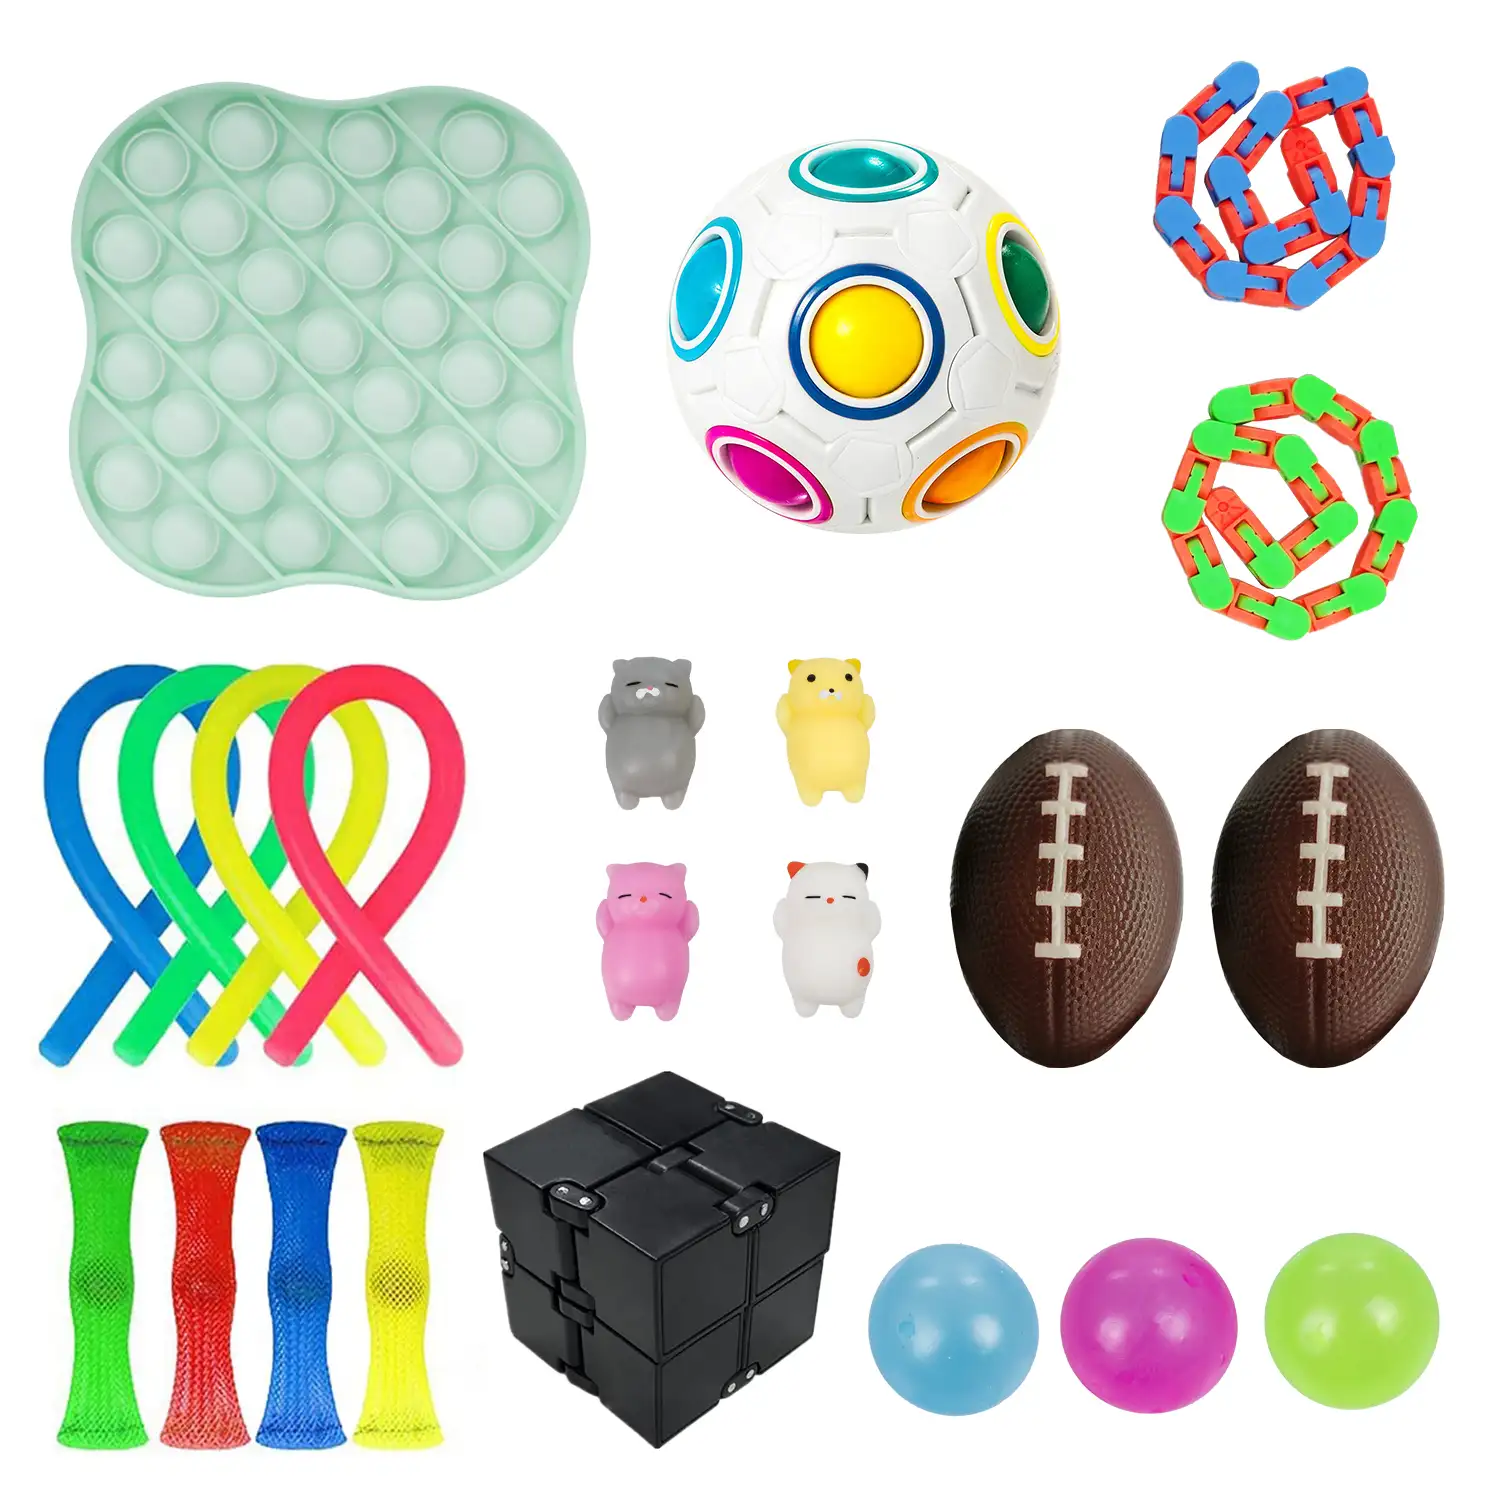 Pack de Fidget Toys anti estrés. Juguetes y accesorios variados.